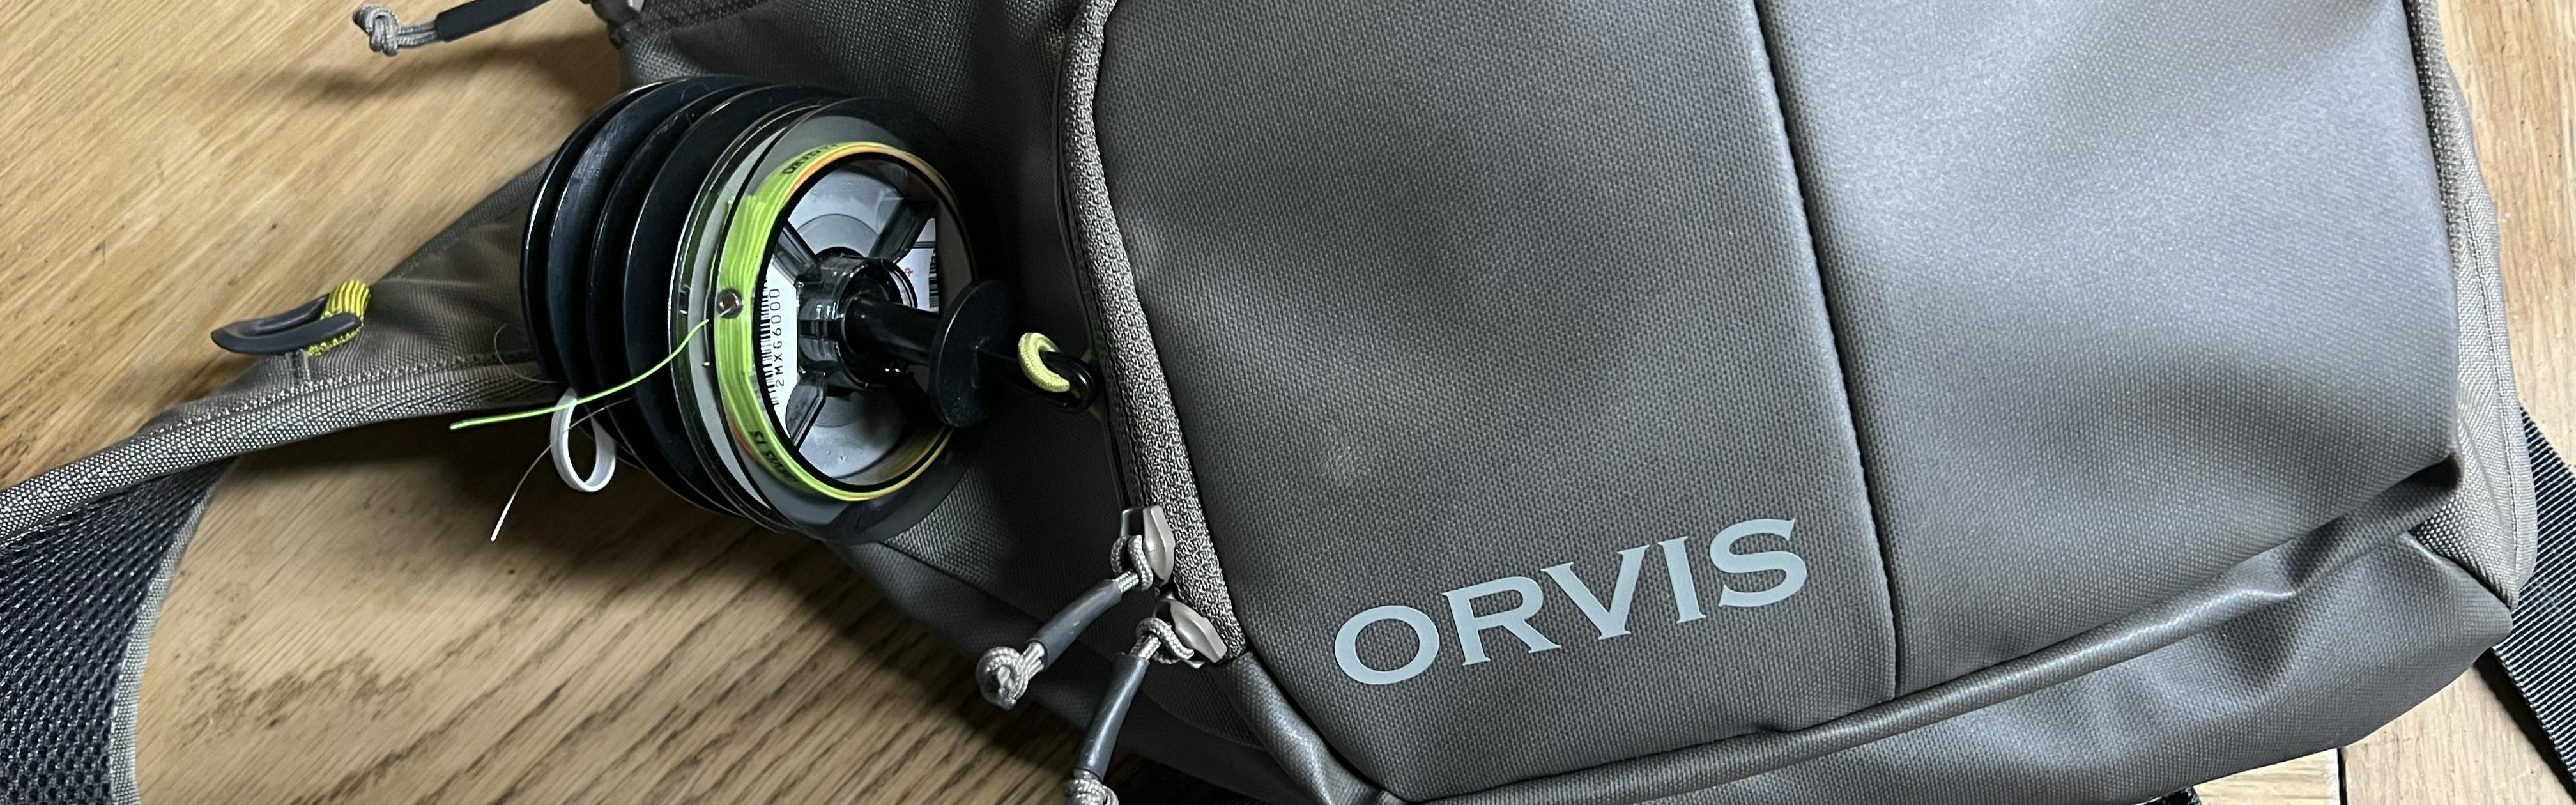 Orvis Orvis Guide SlingSand  Orvis, Sling pack, Fly fishing gear